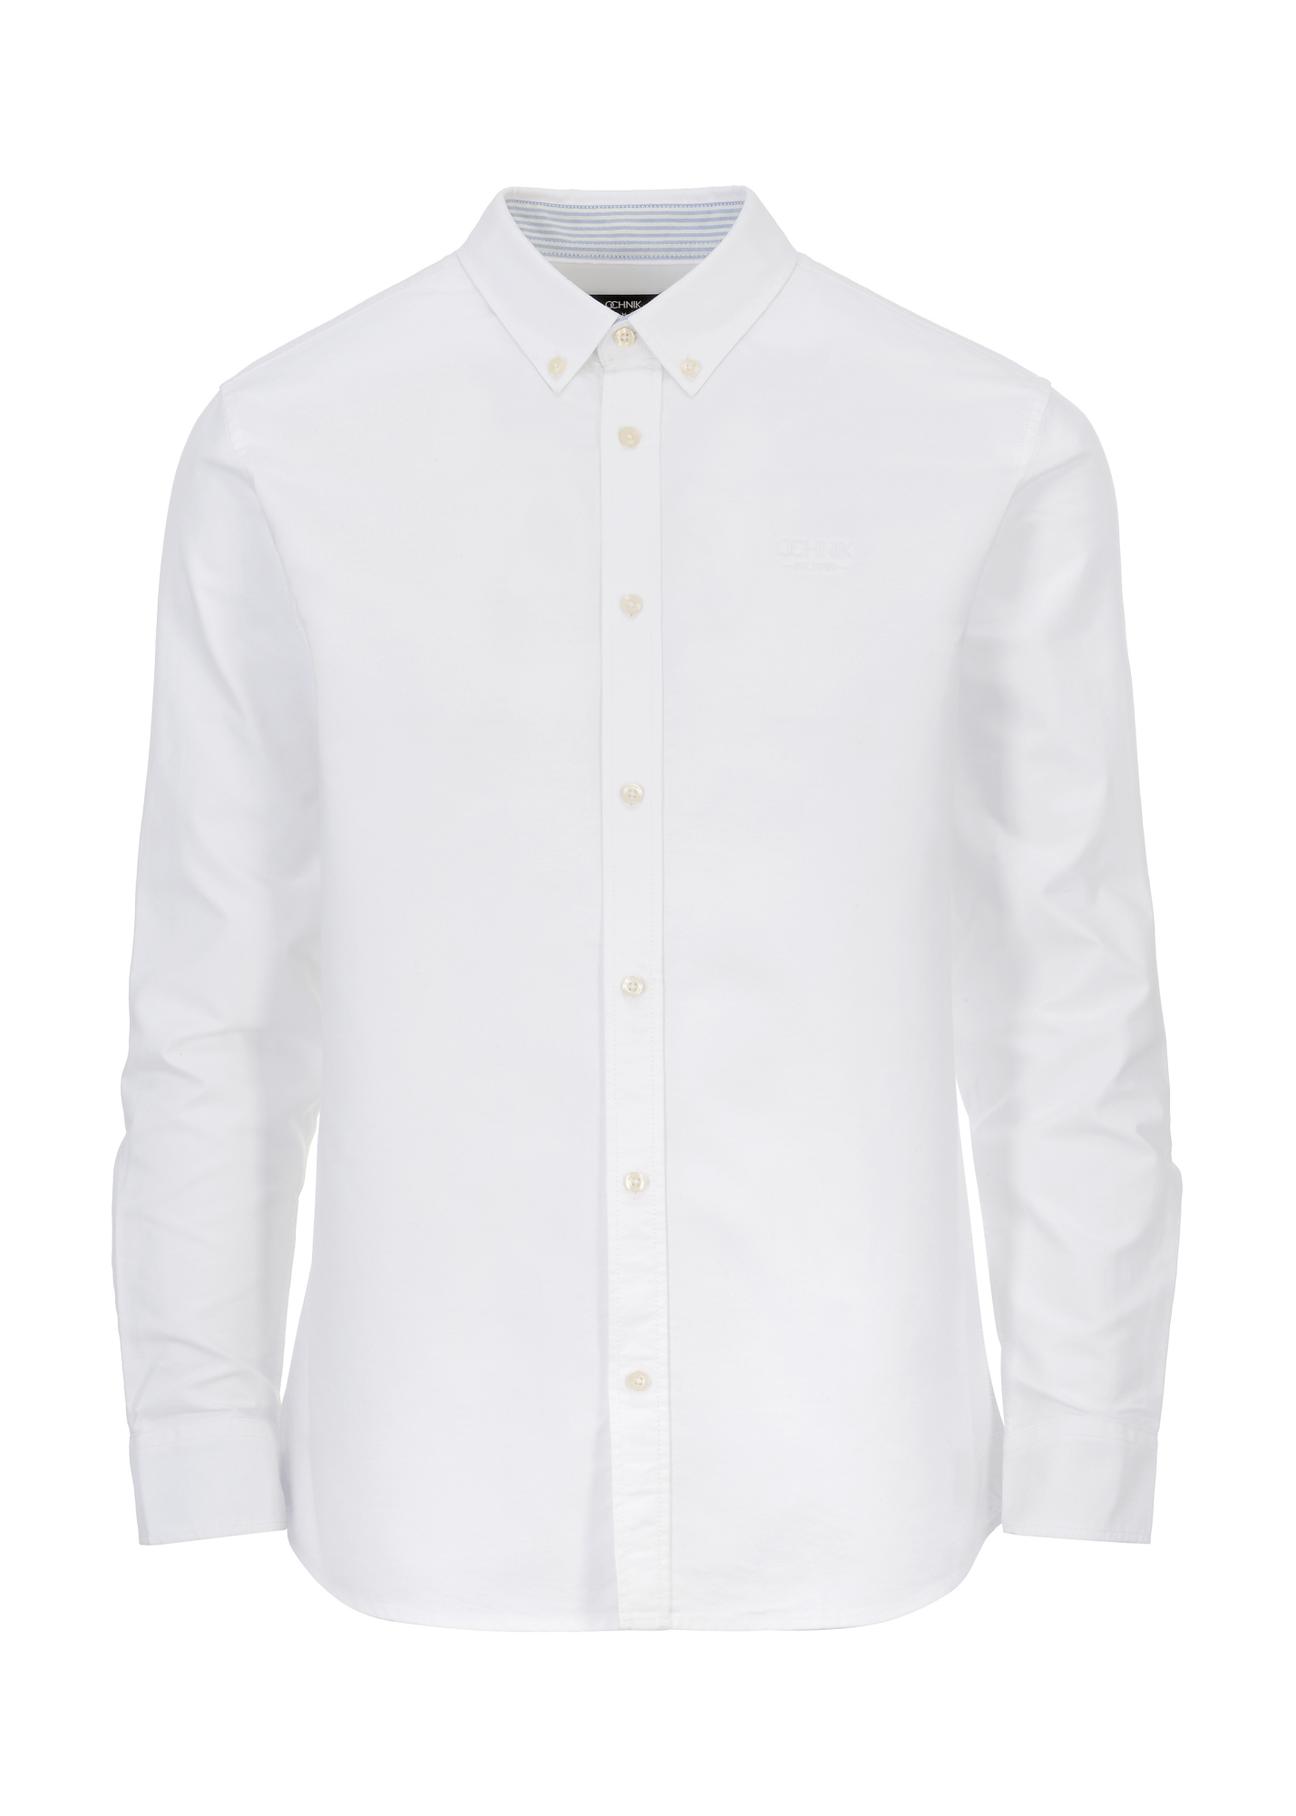 Klasyczna biała koszula męska KOSMT-0305-11(W23)